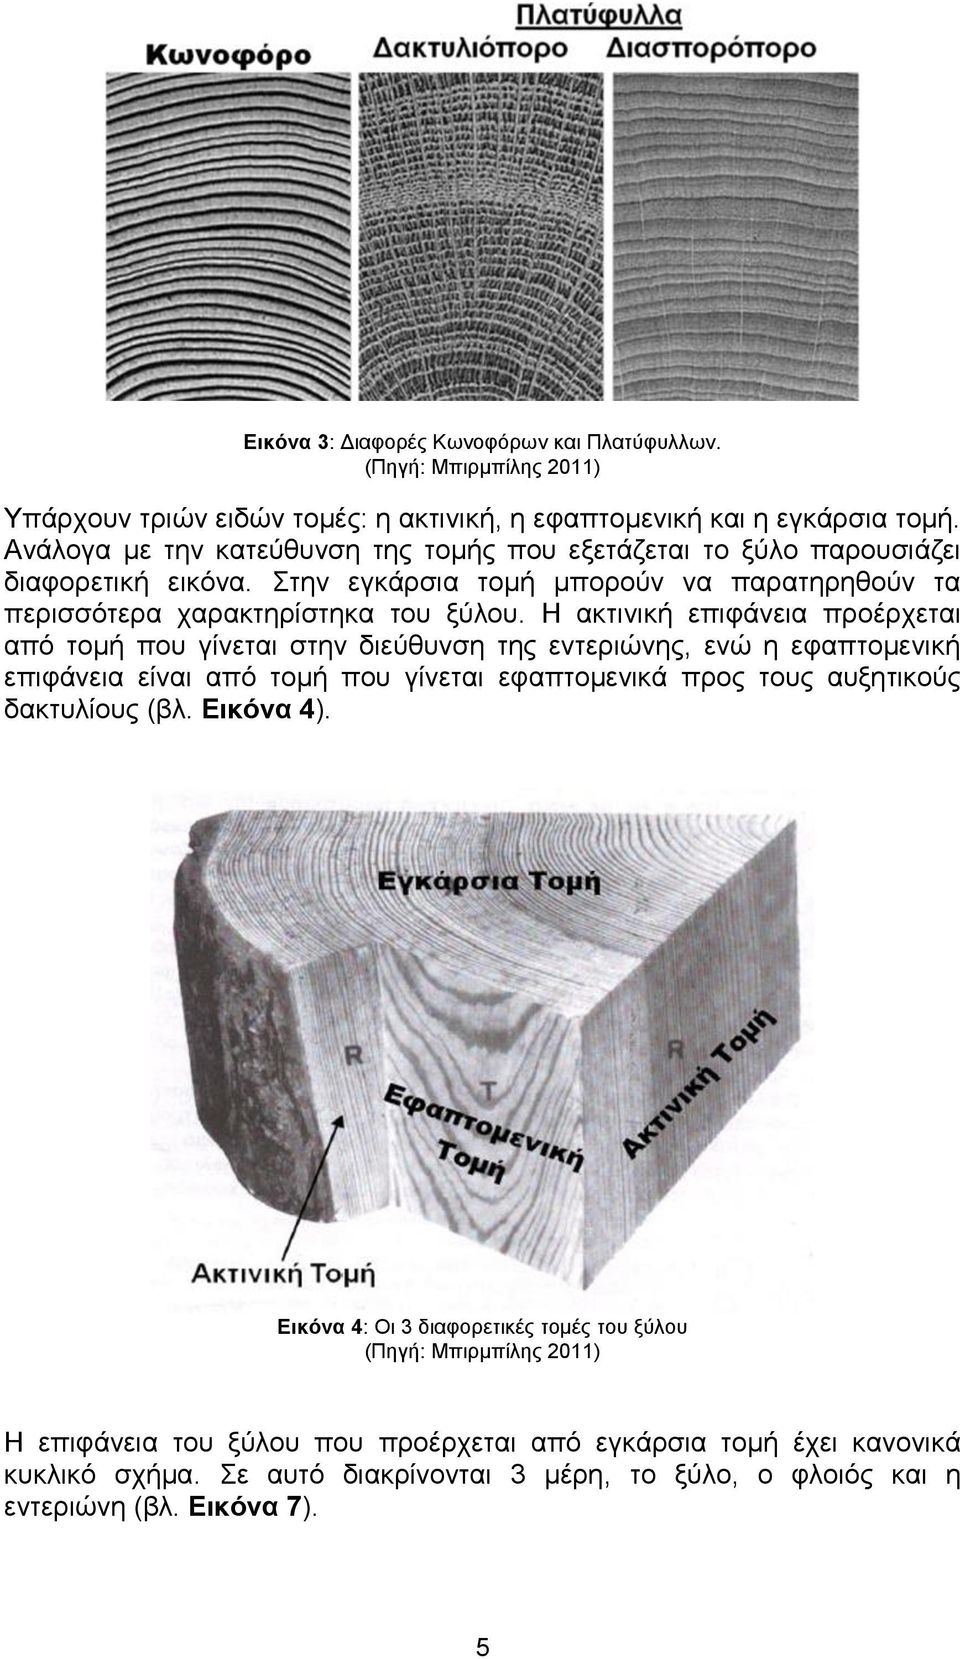 Η ακτινική επιφάνεια προέρχεται από τομή που γίνεται στην διεύθυνση της εντεριώνης, ενώ η εφαπτομενική επιφάνεια είναι από τομή που γίνεται εφαπτομενικά προς τους αυξητικούς δακτυλίους (βλ.